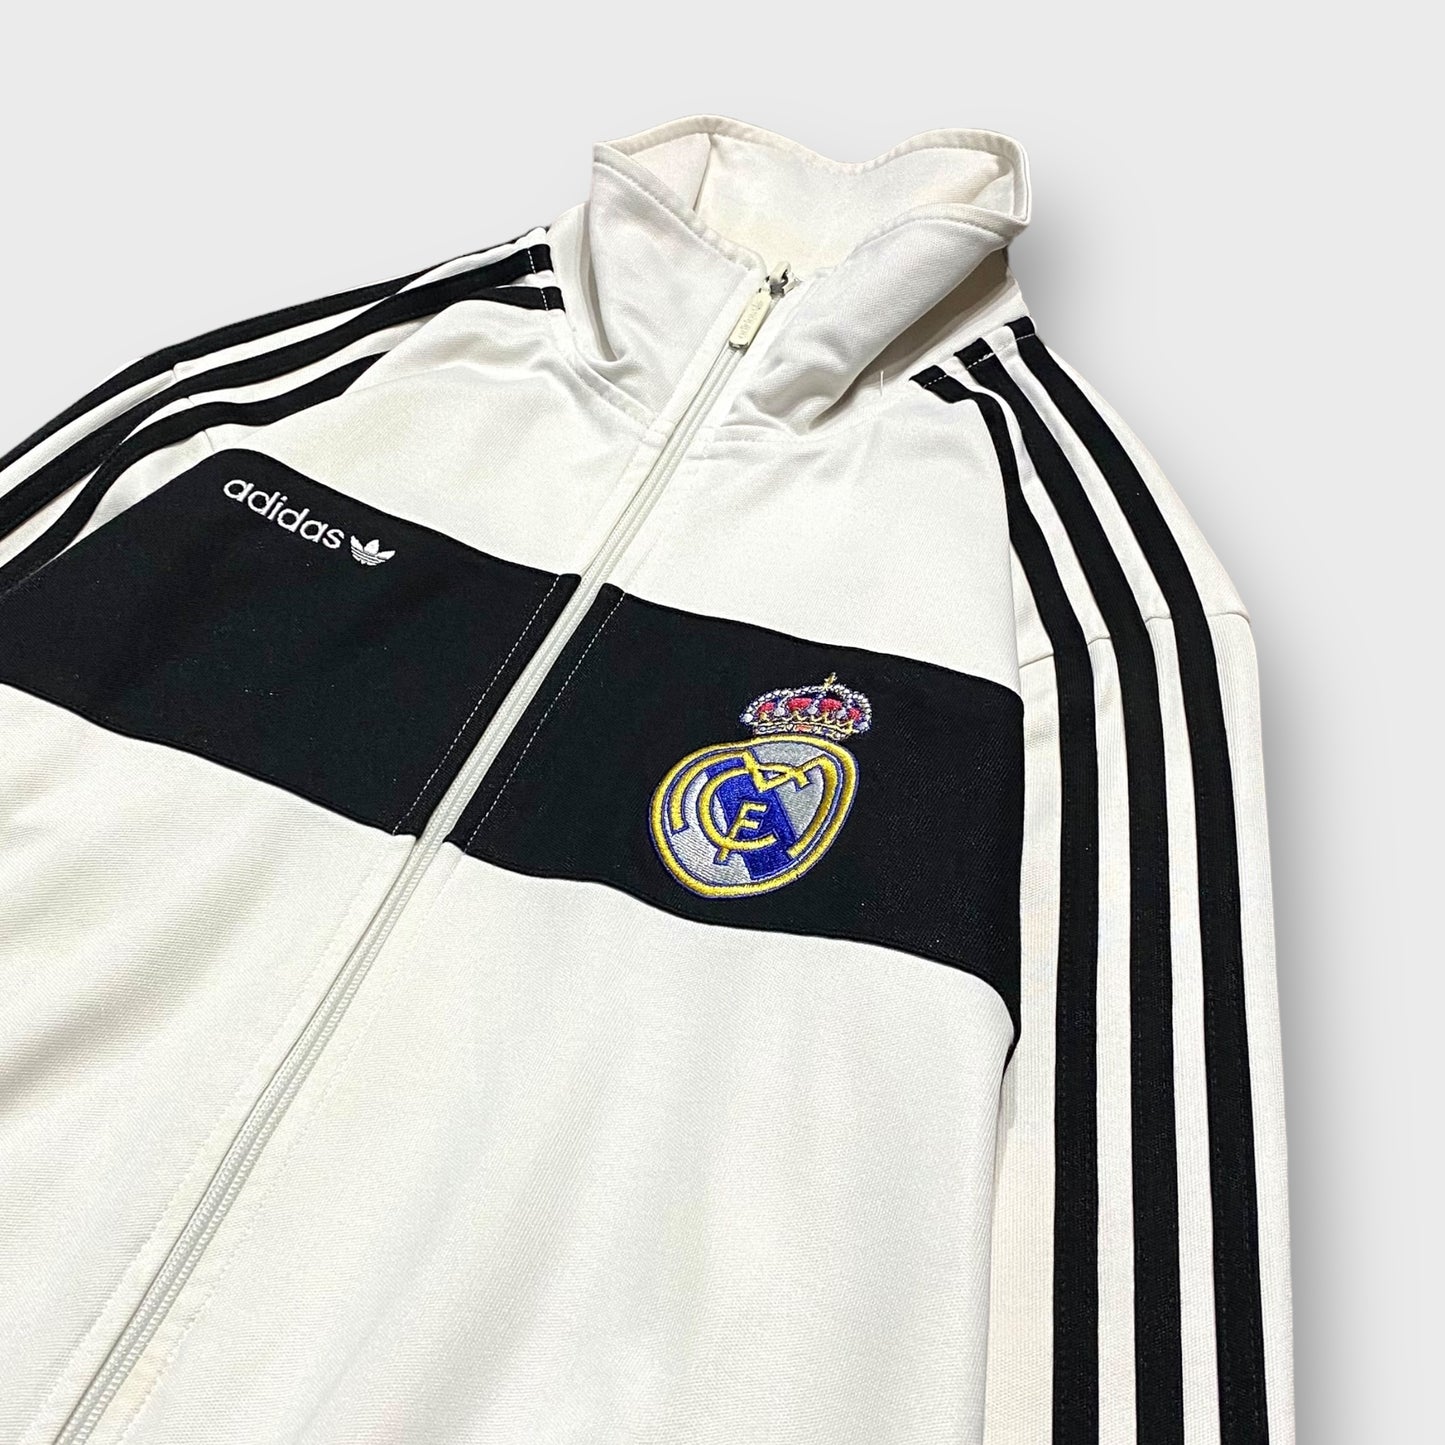 00's "adidas" Real Madrid Track jacket